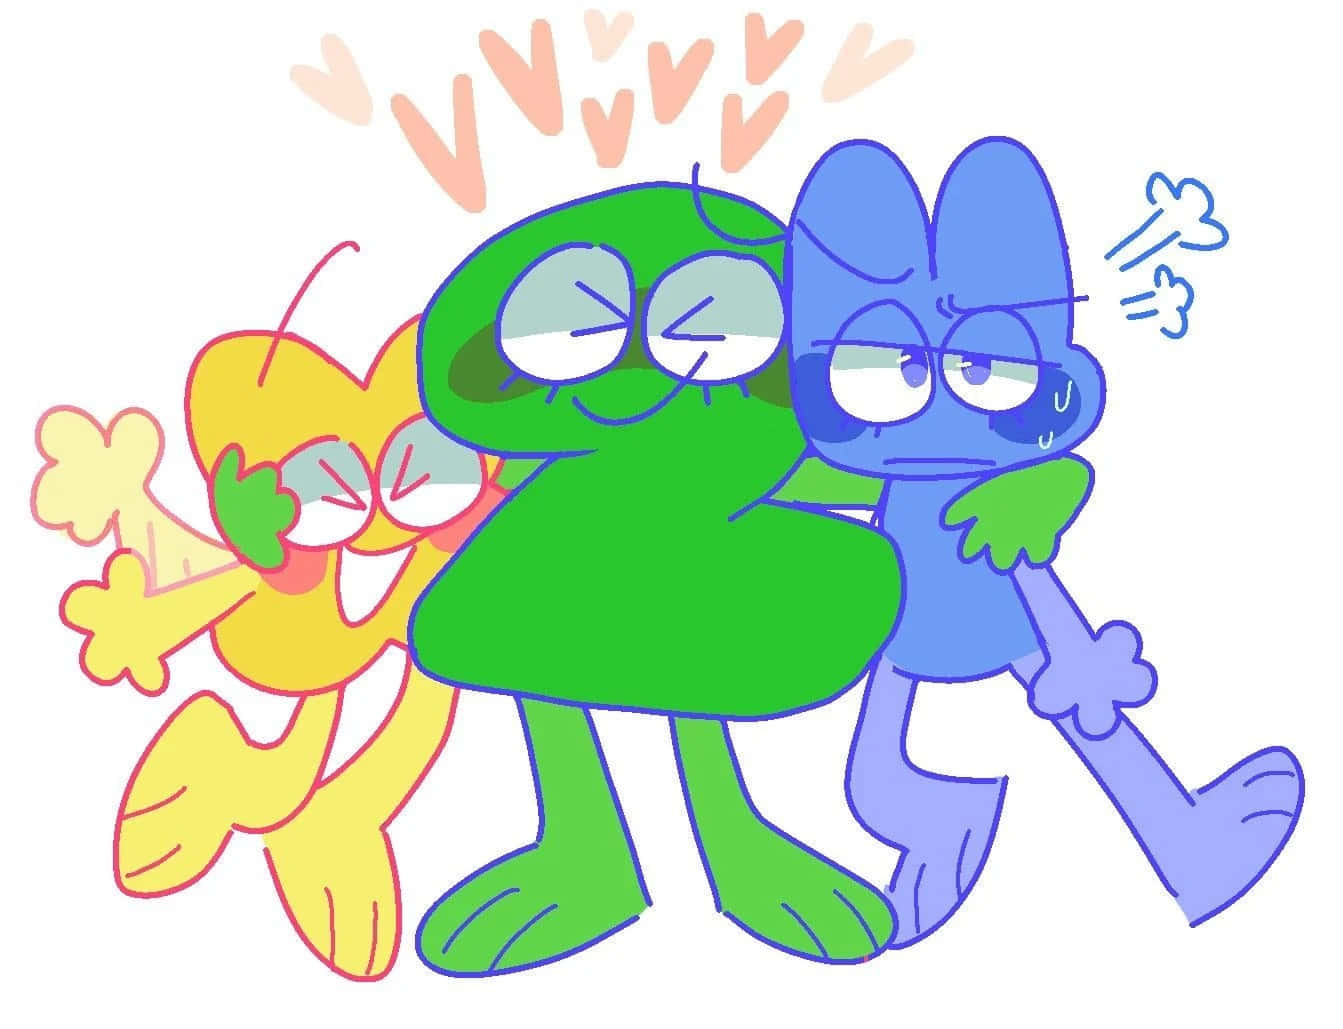 Et tegneserie af tre tegneseriefigurer, der krammer under en regnbue.